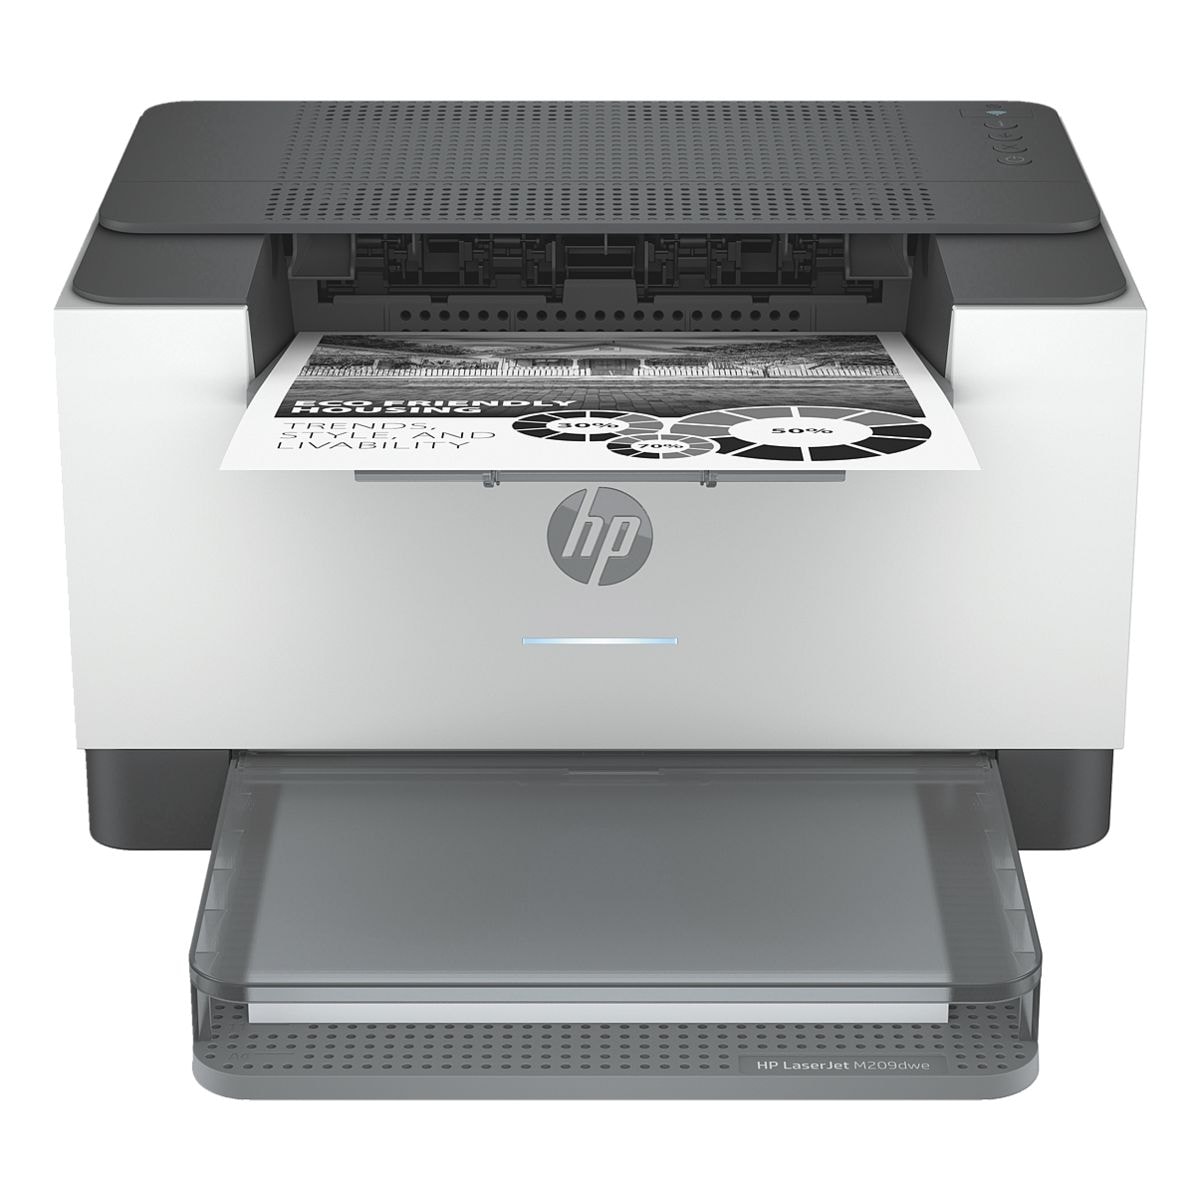 HP Laserdrucker LaserJet M209dwe, A4 schwarz weiß Laserdrucker, 600 x 600 dpi, mit WLAN und LAN